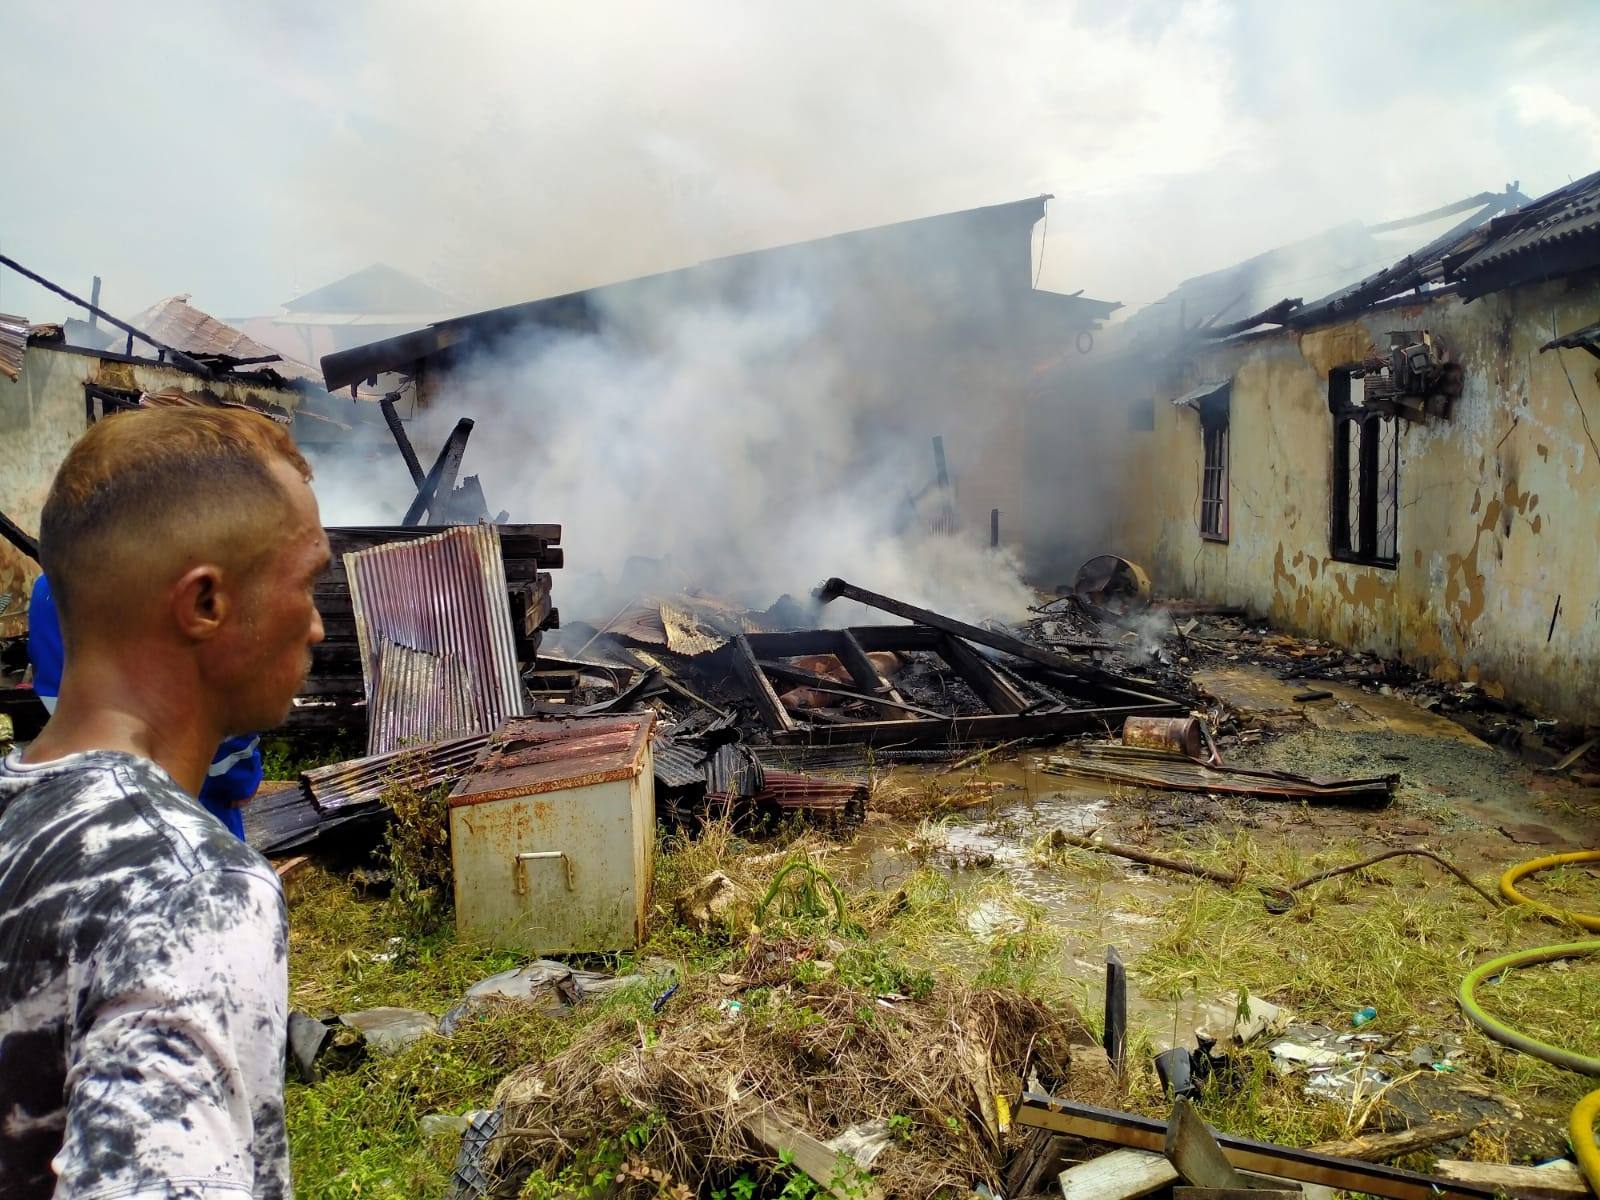 Kebakaran di Lengkol, 3 Rumah Hangus, 1 Unit N-Max Tiidak Terselamatkan